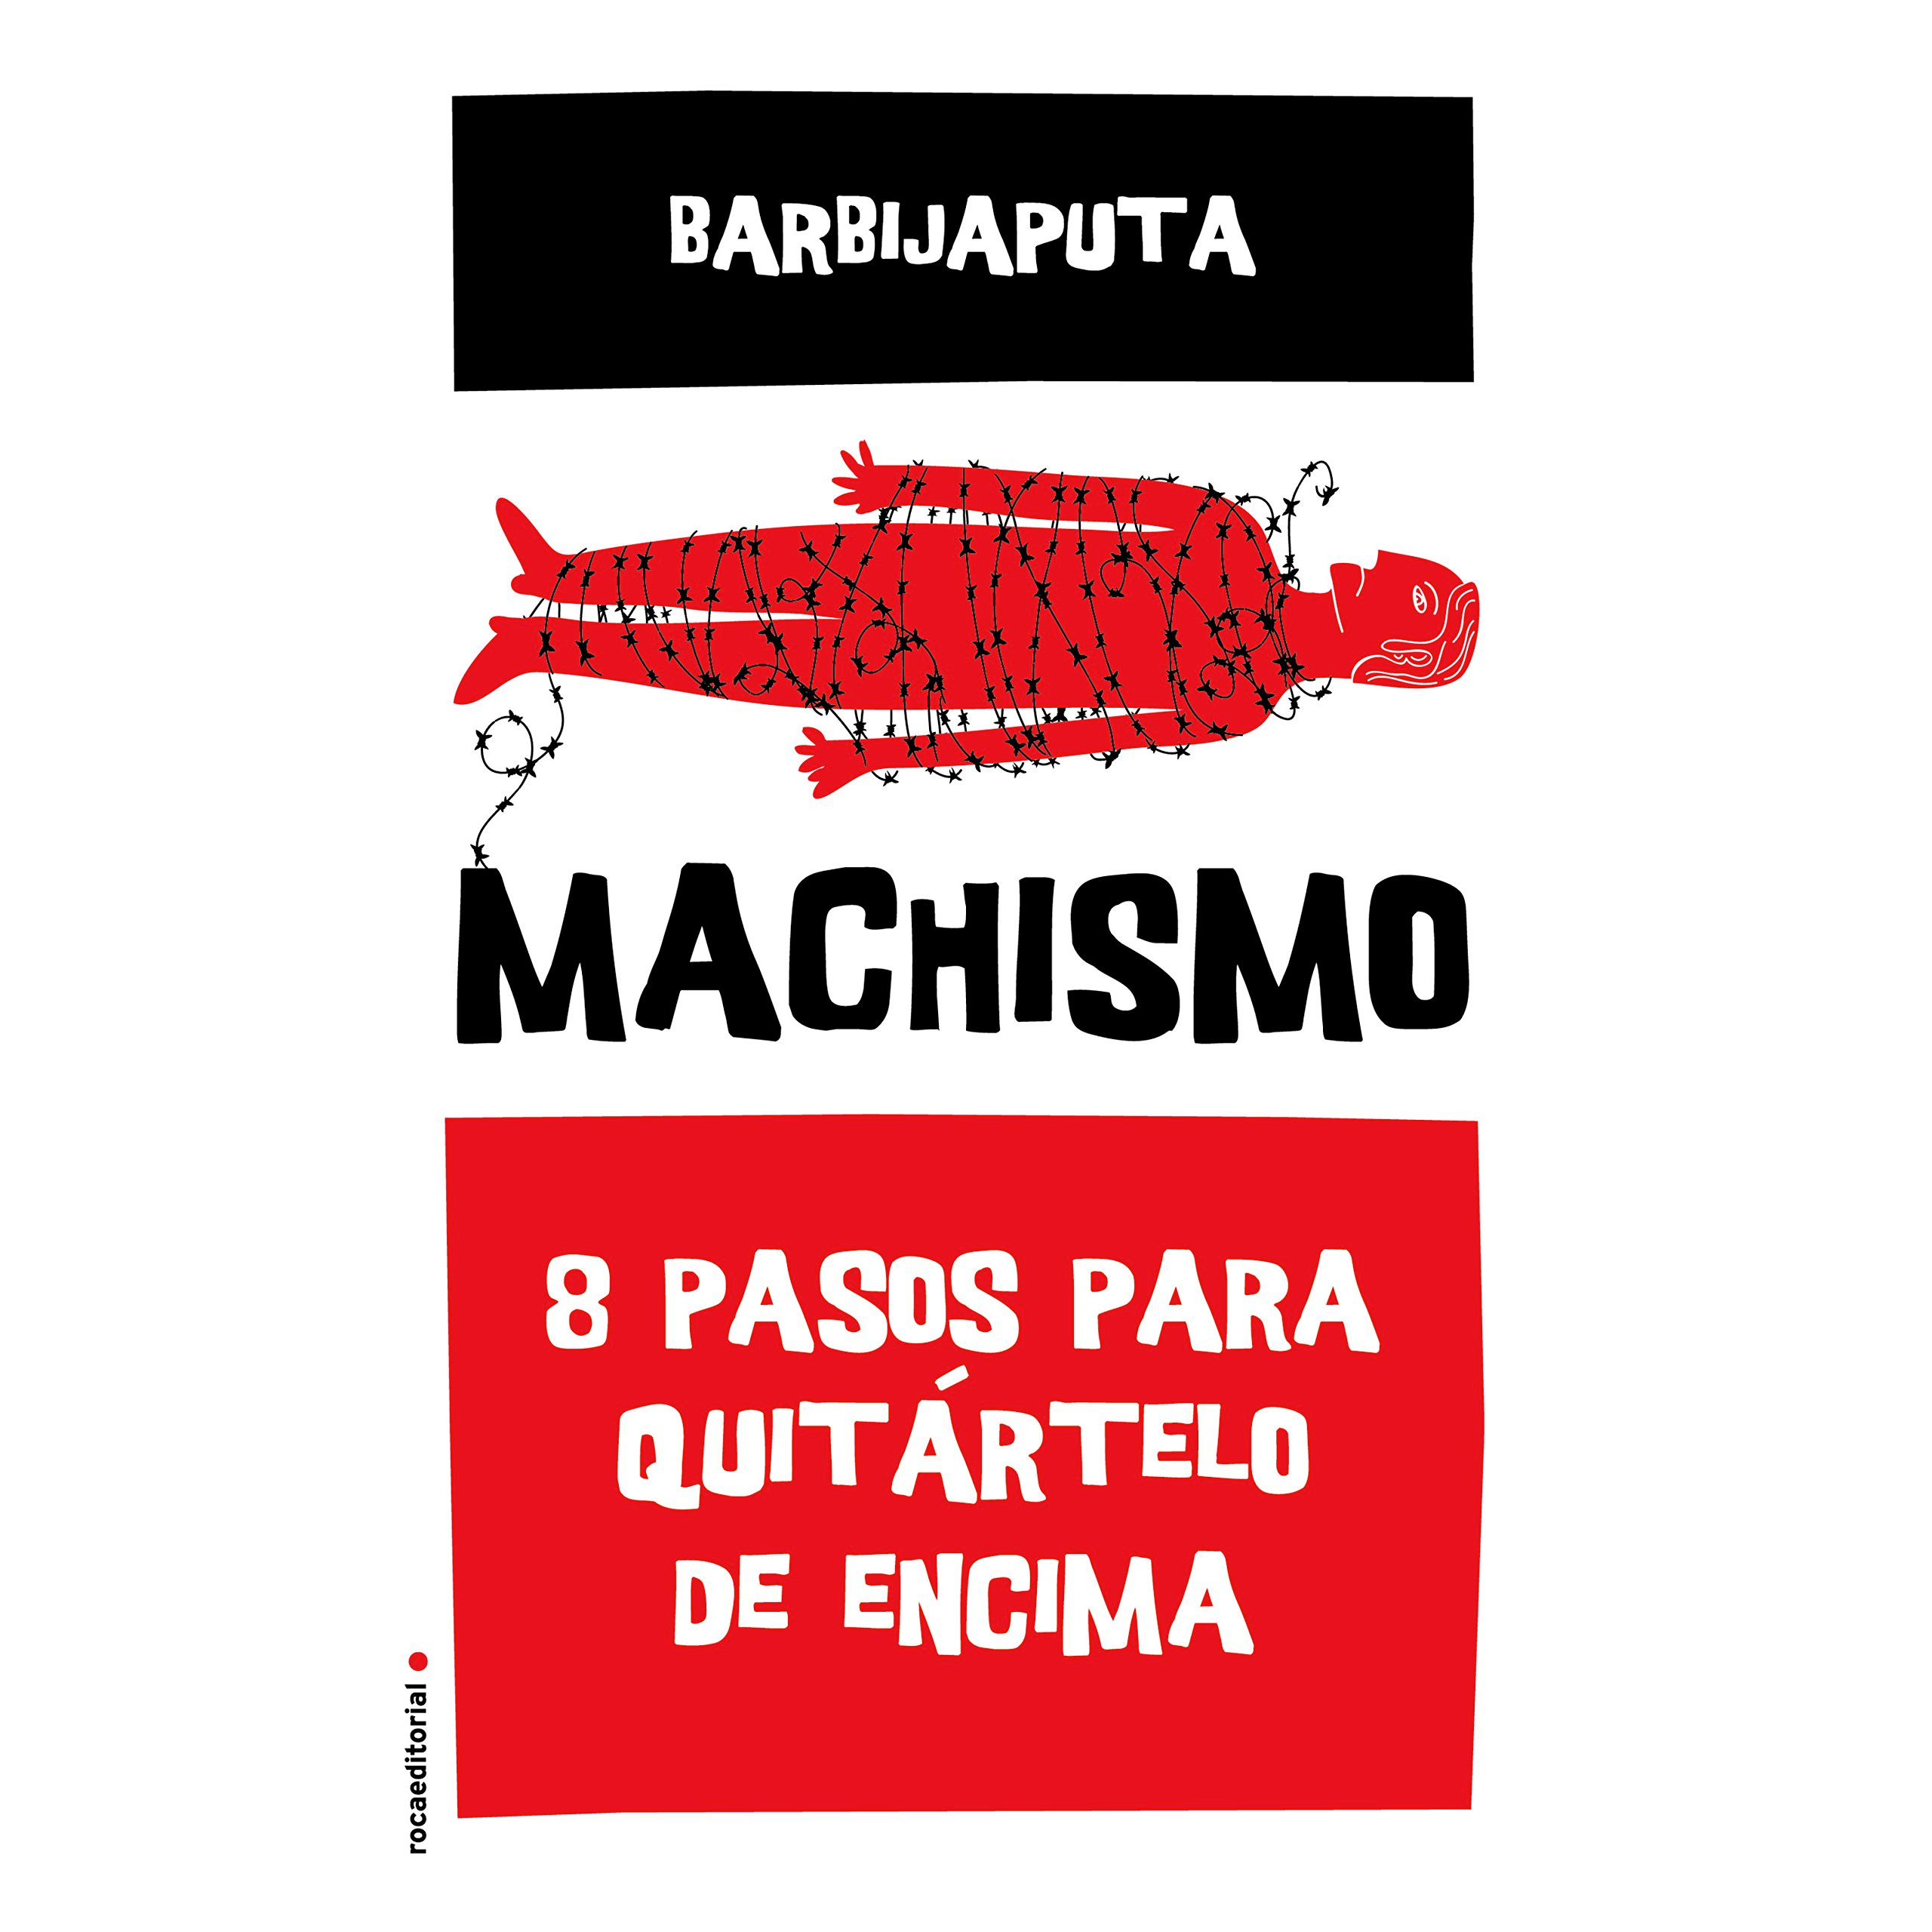 "Machismo" de Barbijaputa